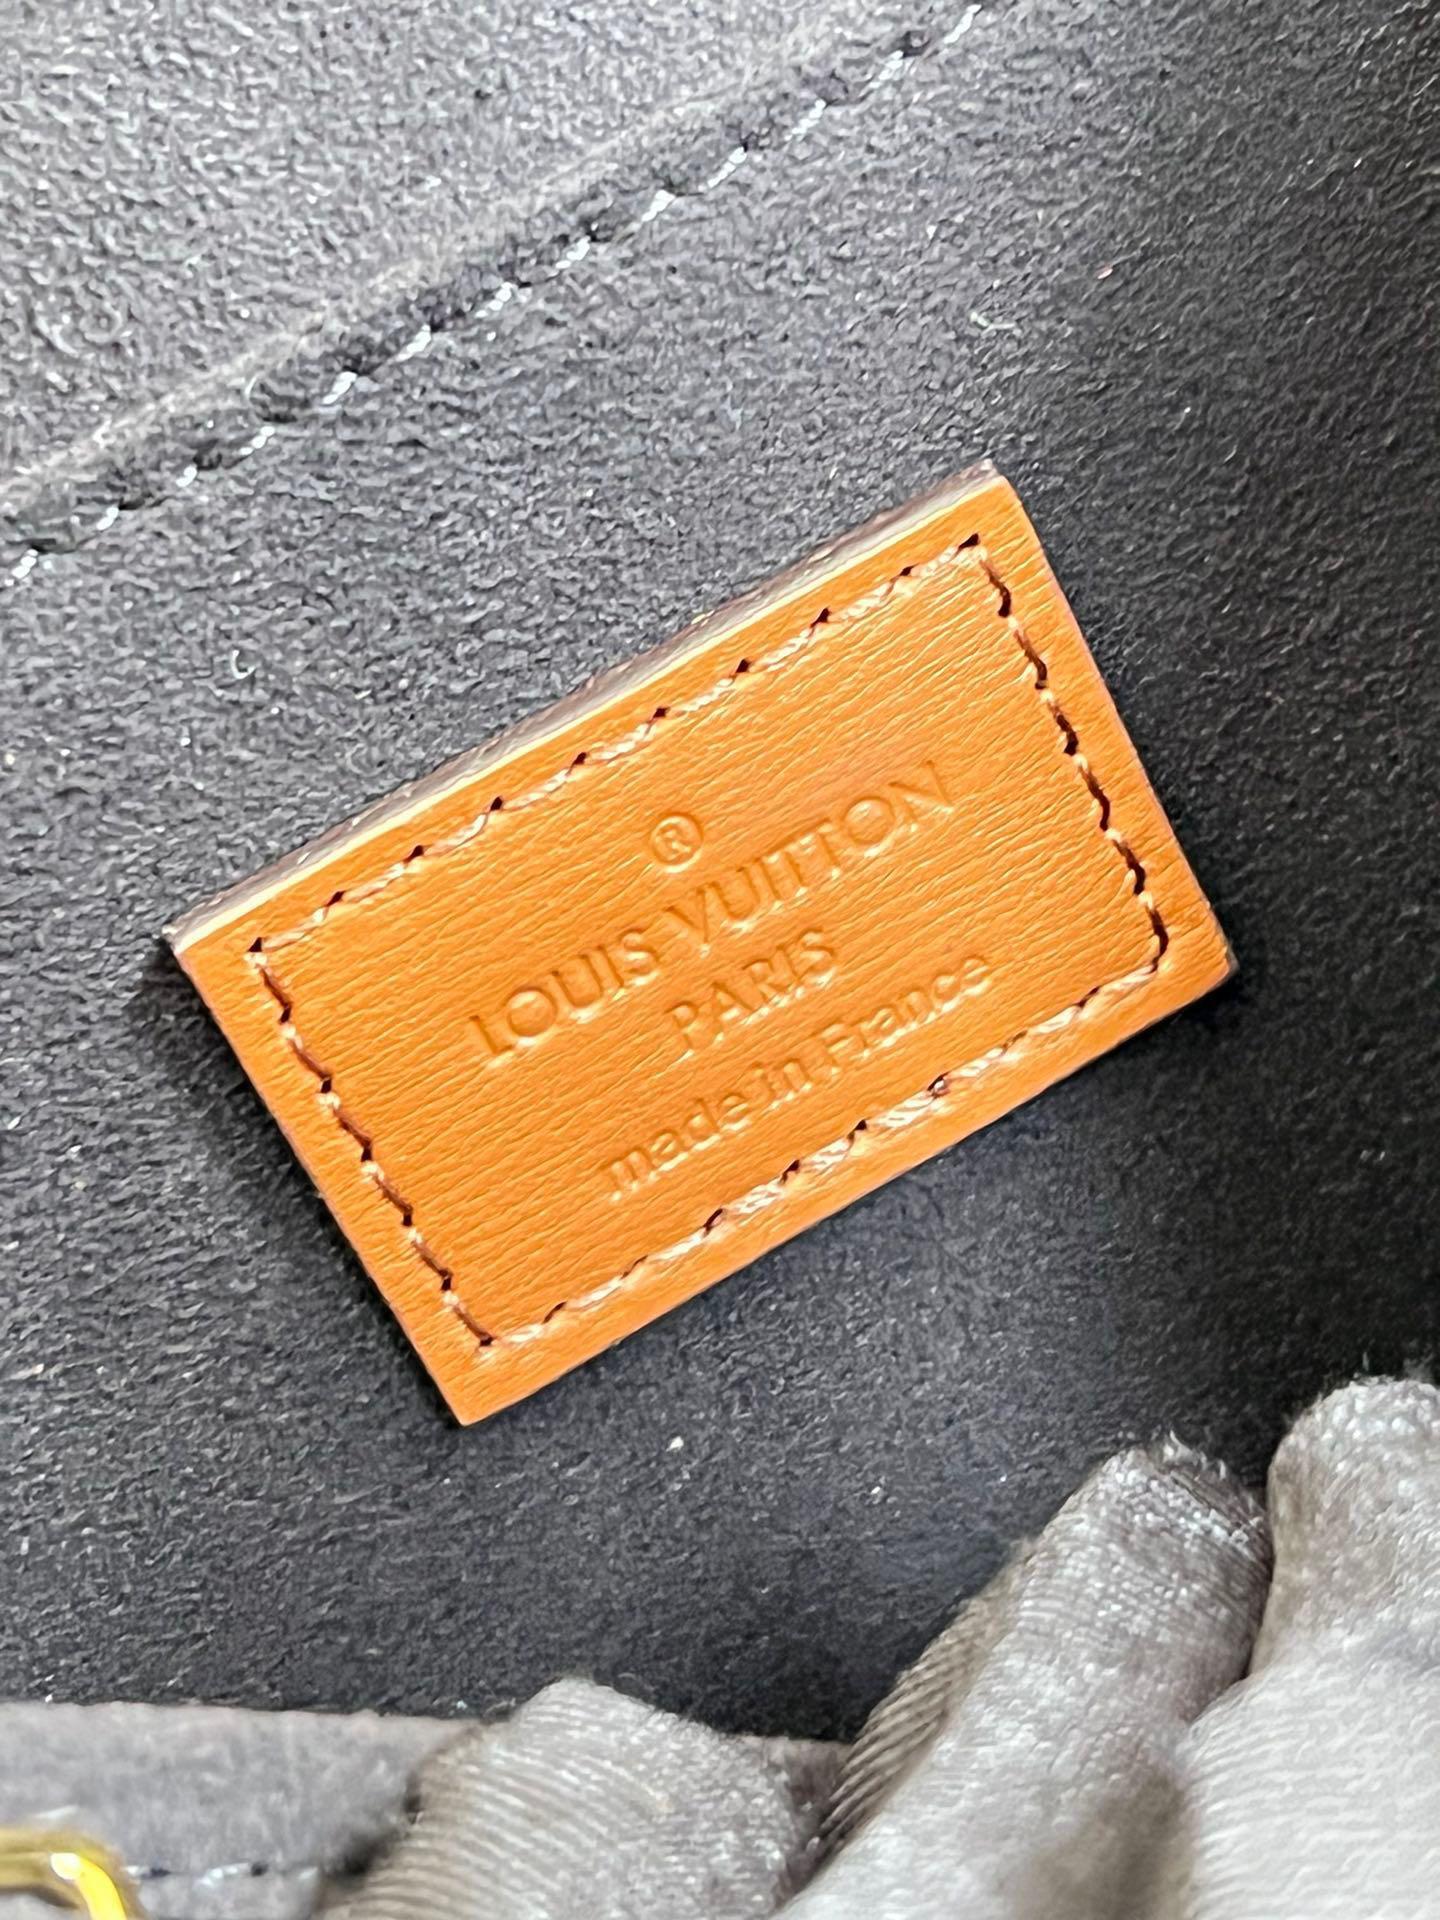 Shop Louis Vuitton Dauphine mm (M45958) by LesAiles